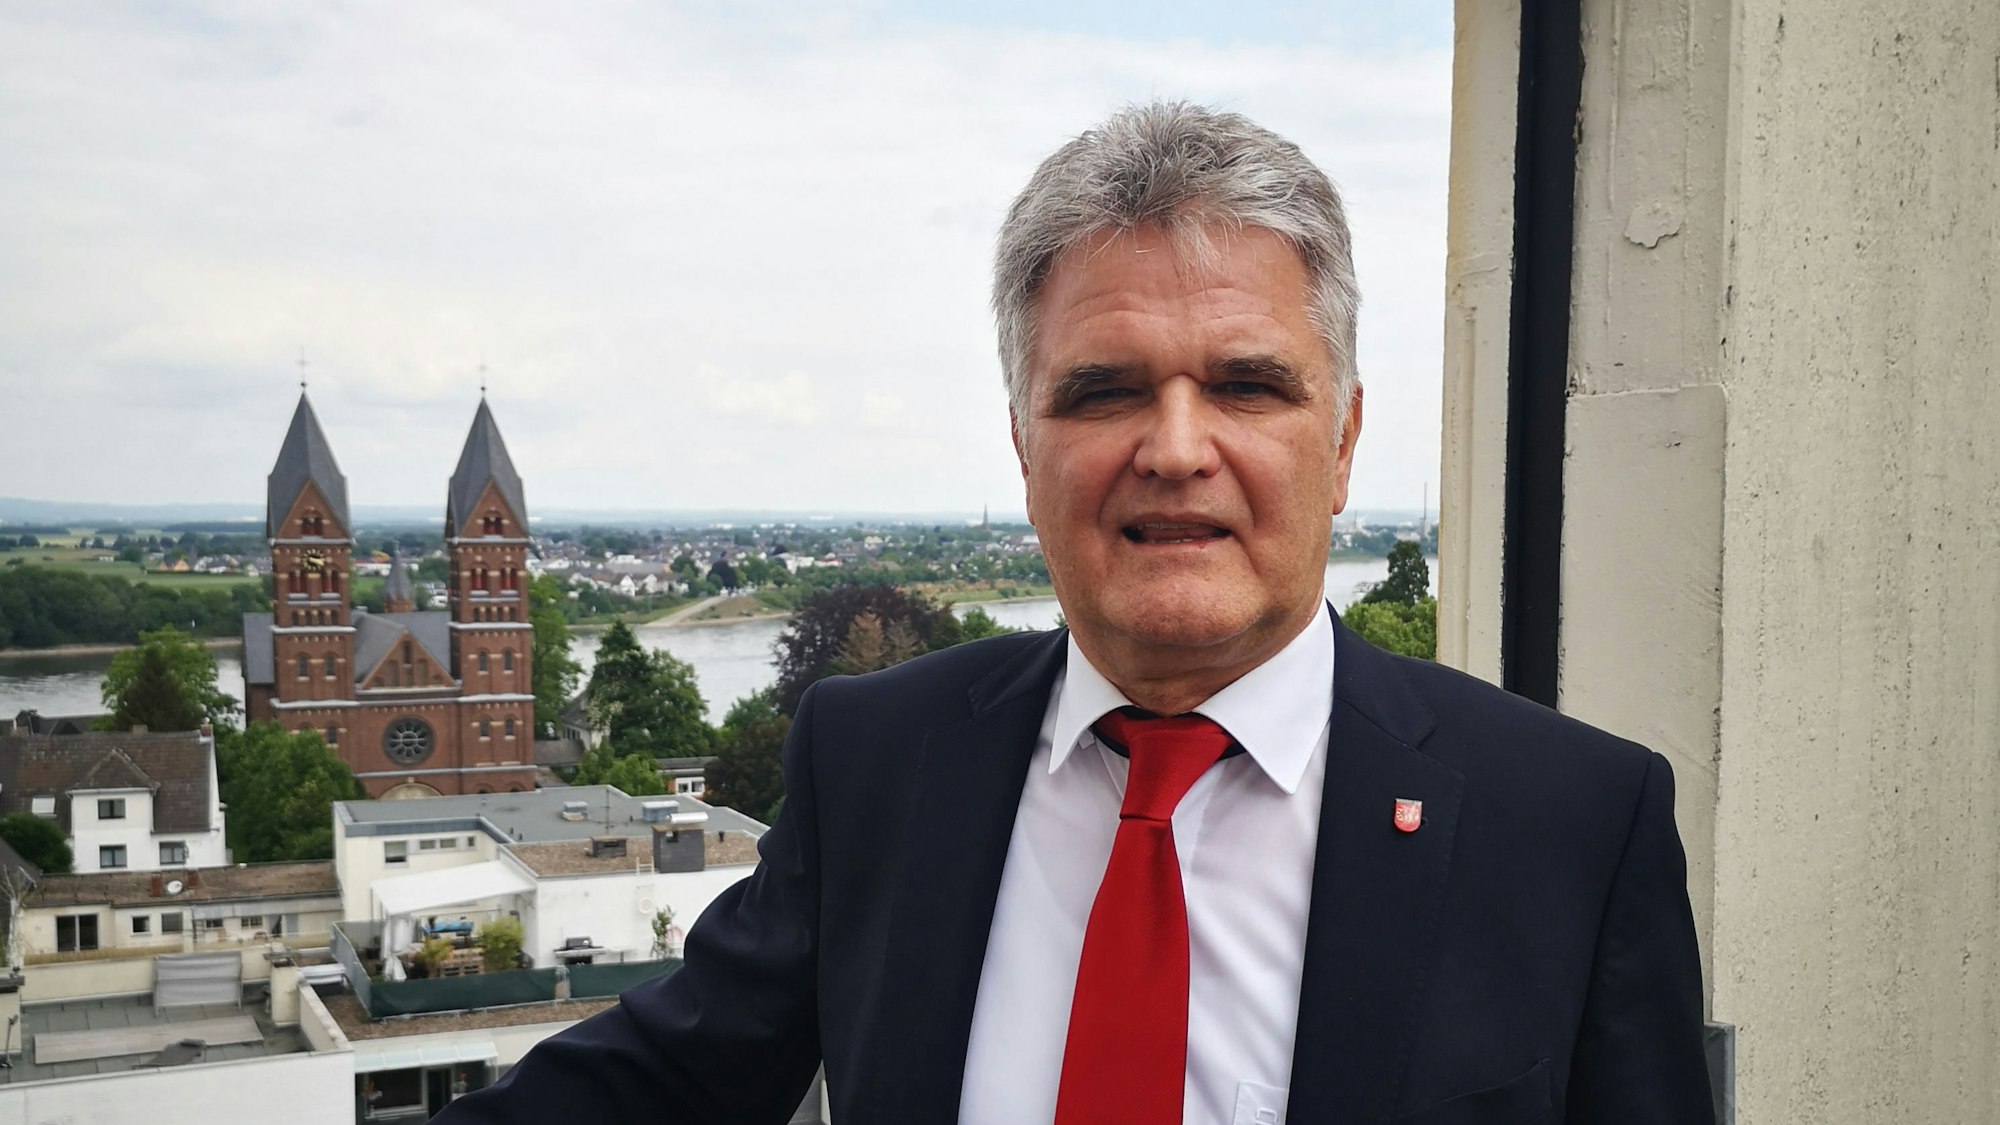 Erwin Esser in schwarzem Anzug und roter Krawatte. Im Hintergrund ist die Stadt Wesseling zu sehen.